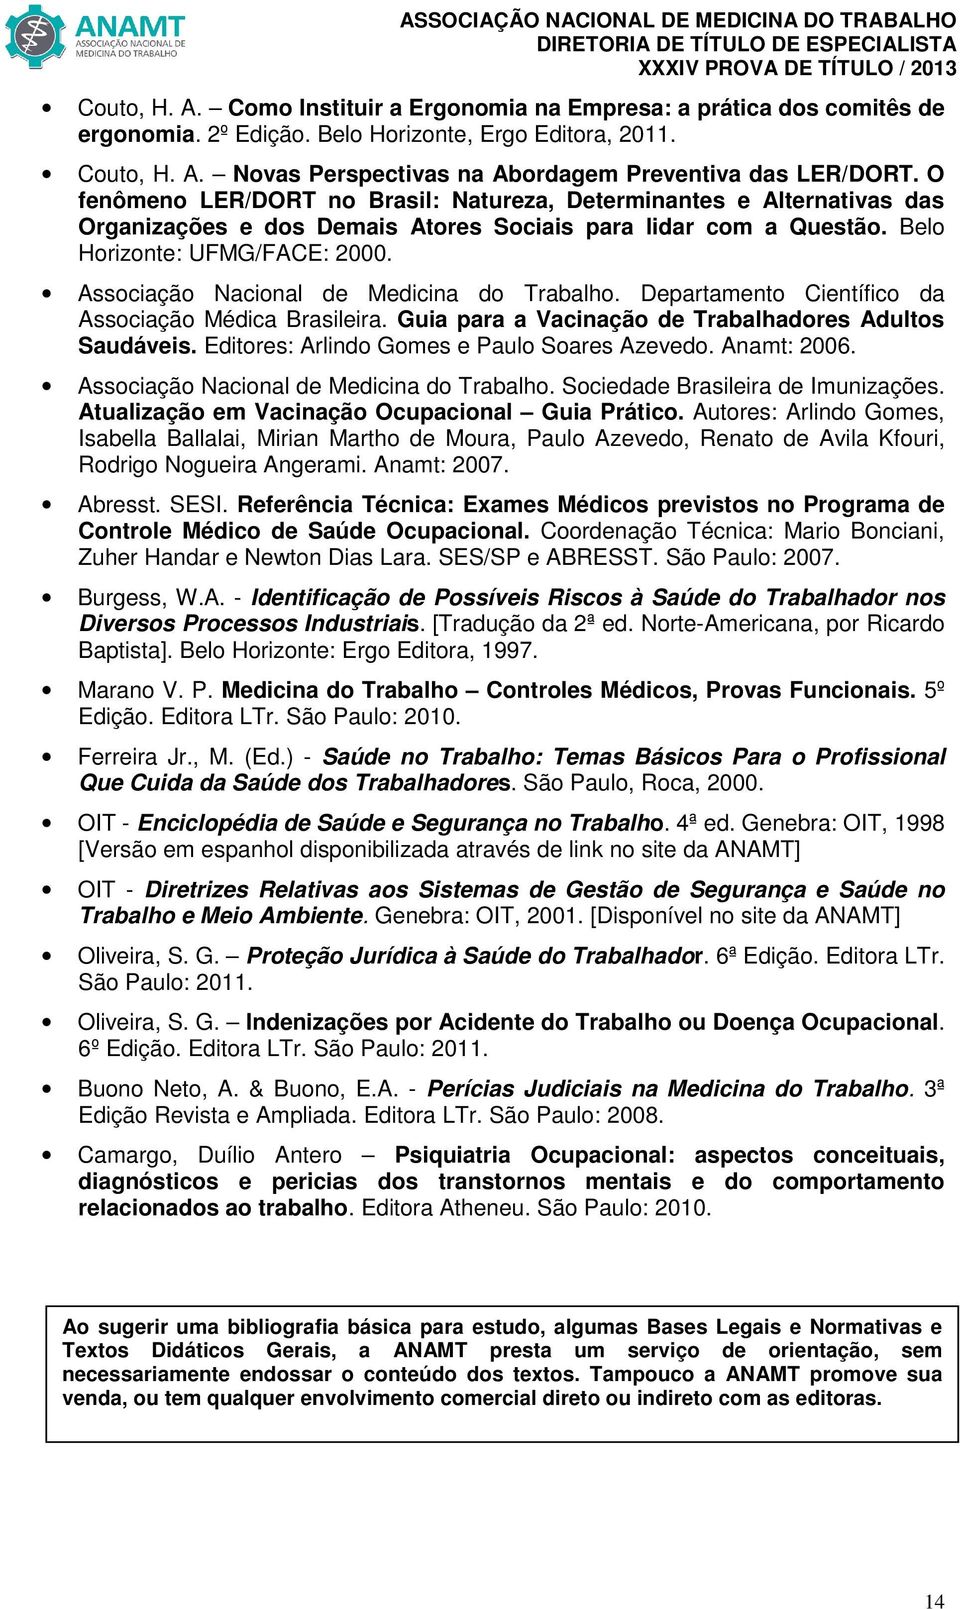 Associação Nacional de Medicina do Trabalho. Departamento Científico da Associação Médica Brasileira. Guia para a Vacinação de Trabalhadores Adultos Saudáveis.